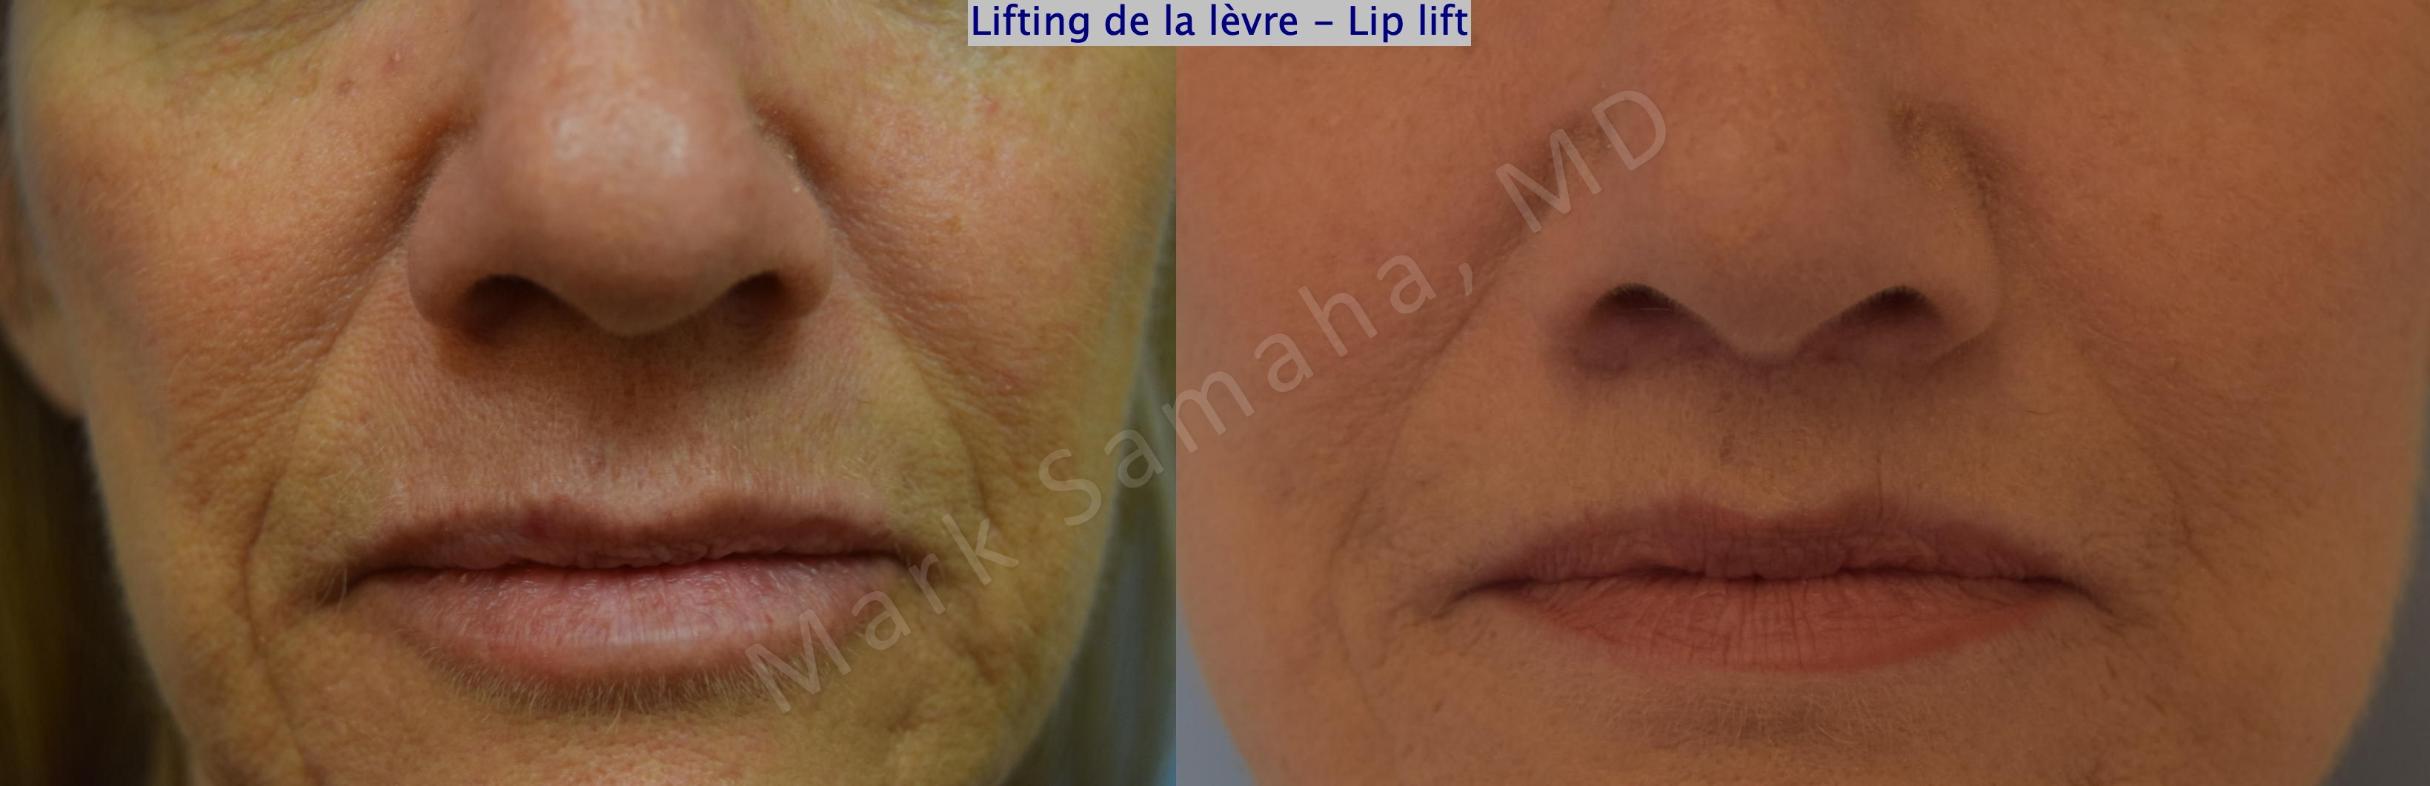 Before & After Lifting de la lèvre supérieure / Lip Lift  Case 170 Front View in Mount Royal, QC